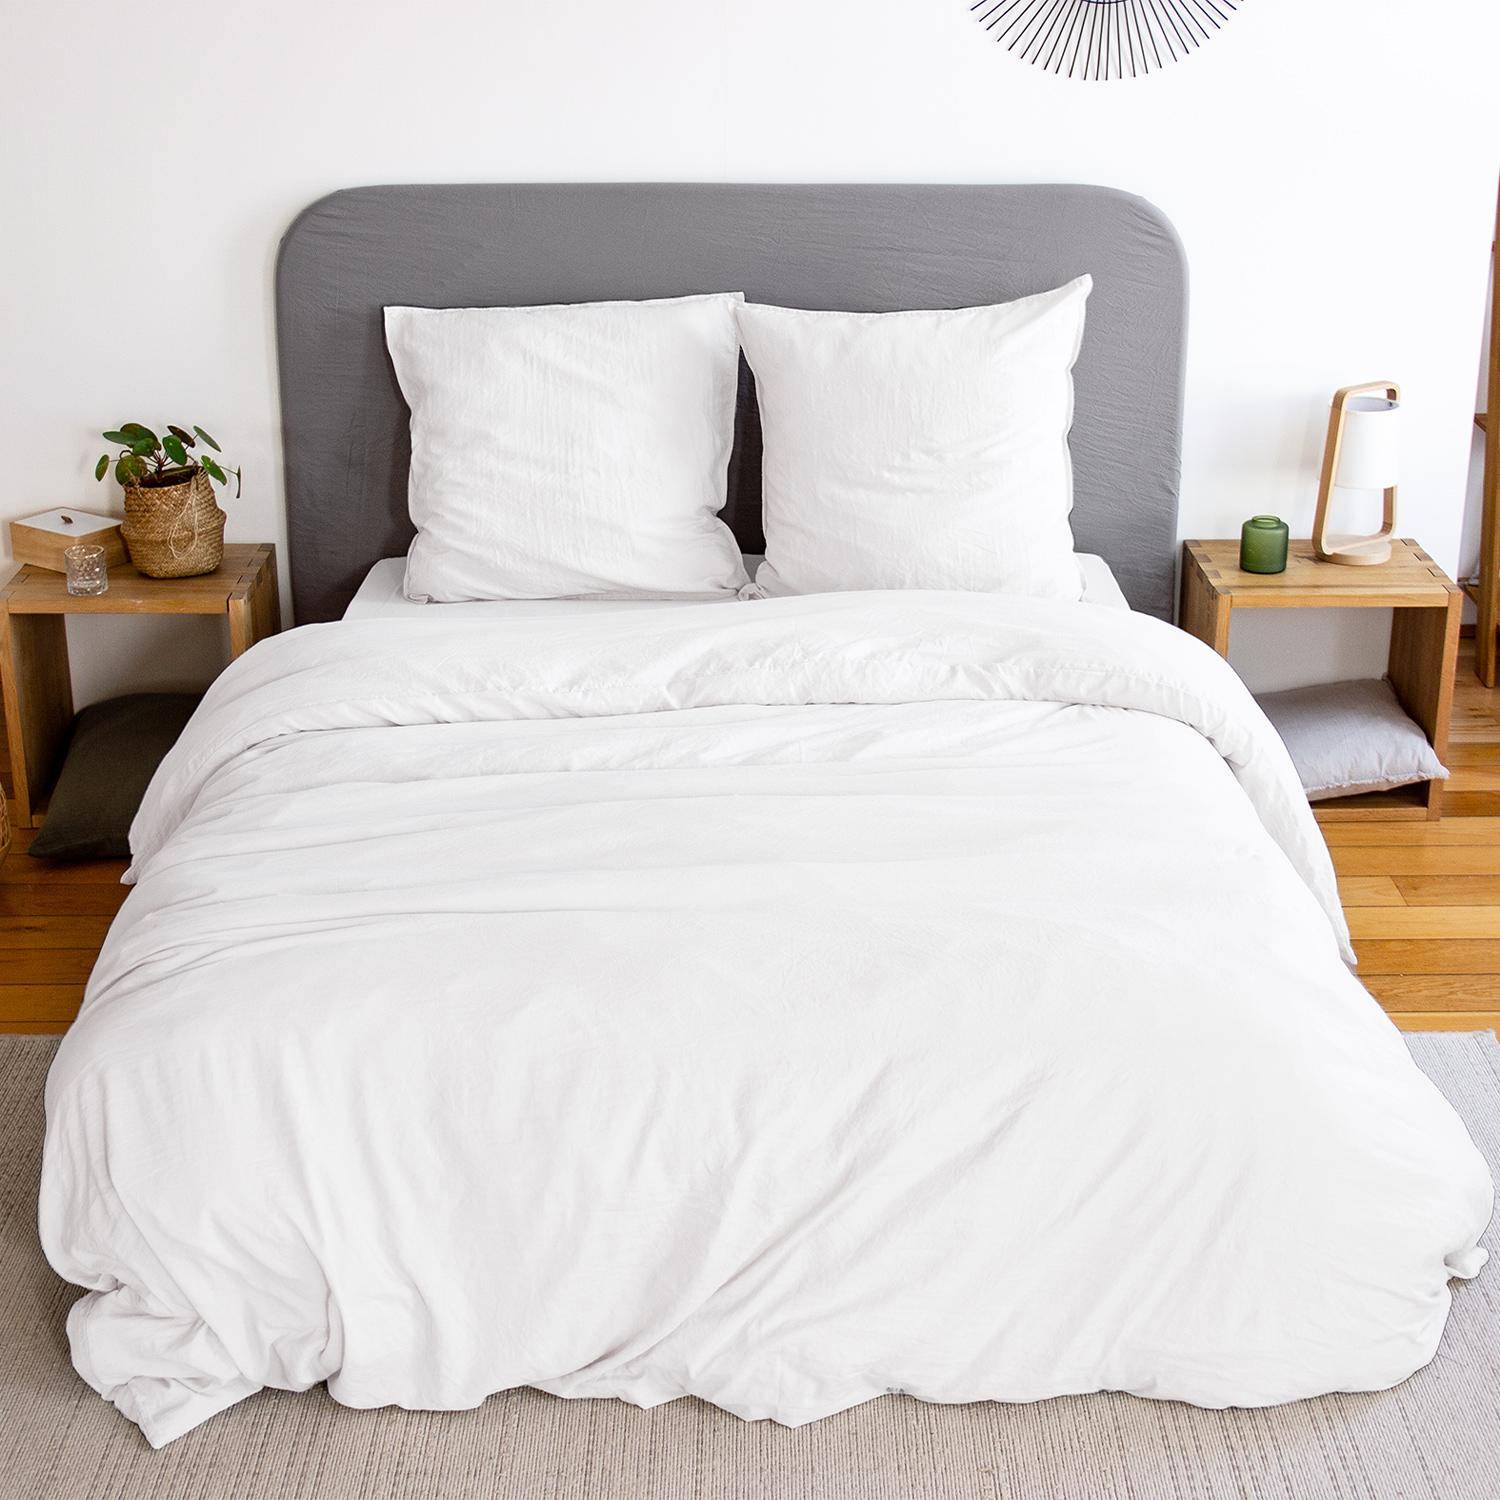 Bettwäsche-Set aus vorgewaschener Mikrofaser in weiß 240 x 220 cm für Doppelbetten, 1 Bettbezug und 2 Kissenbezüge Photo1